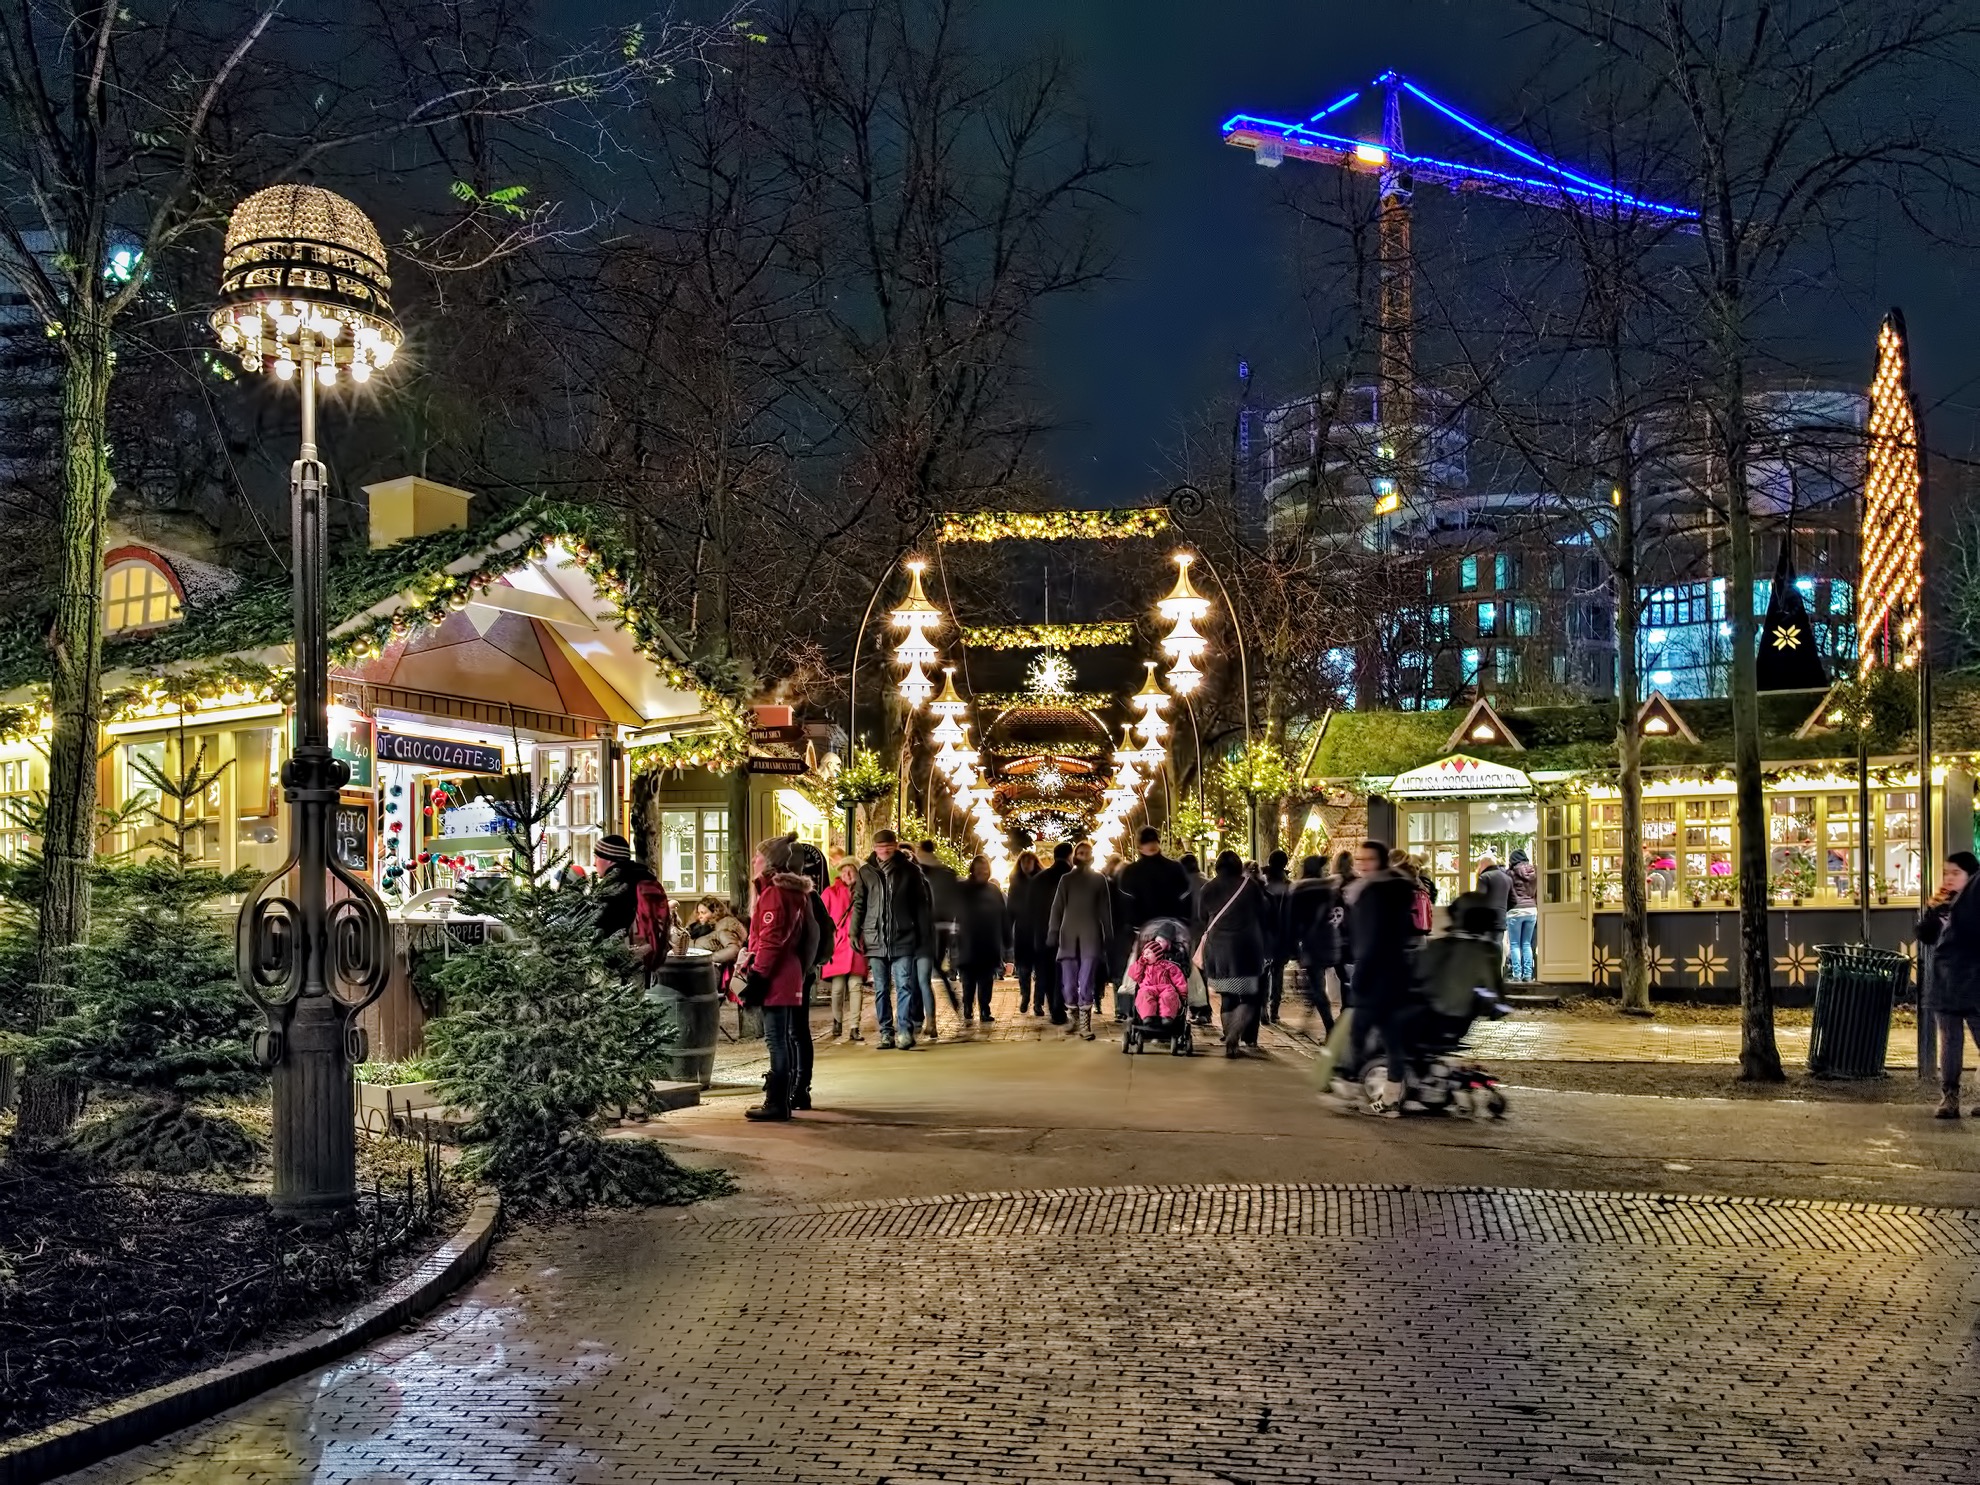 Por qué Tivoli Gardens es una visita obligada alrededor de la Navidad - 11